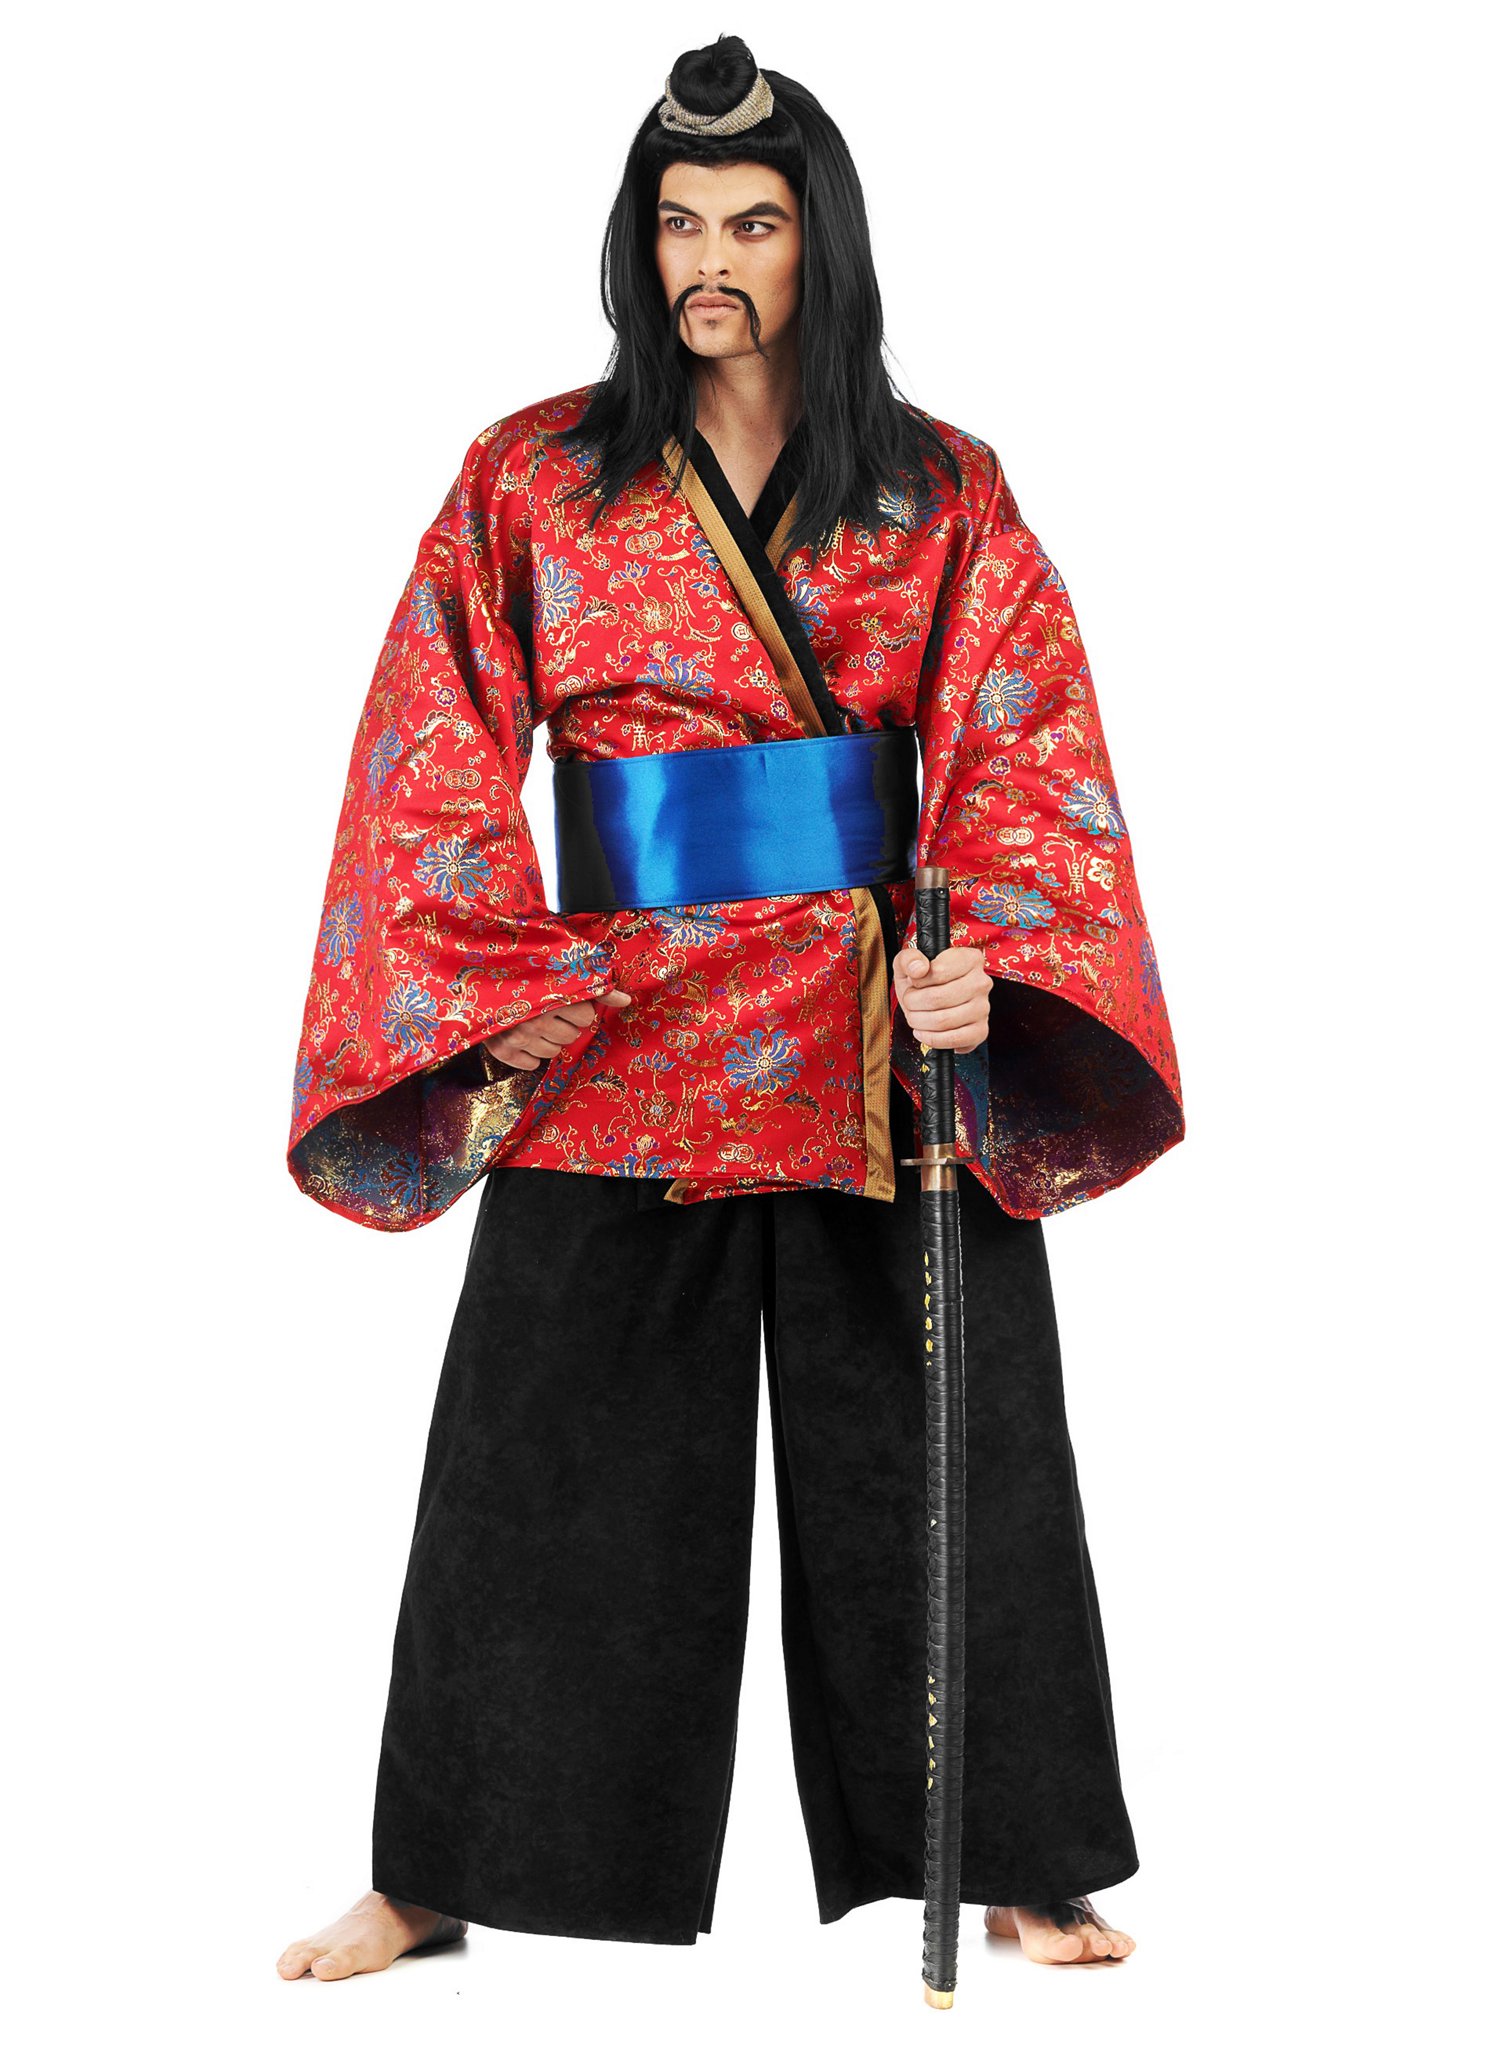 японское кимоно мужское фото